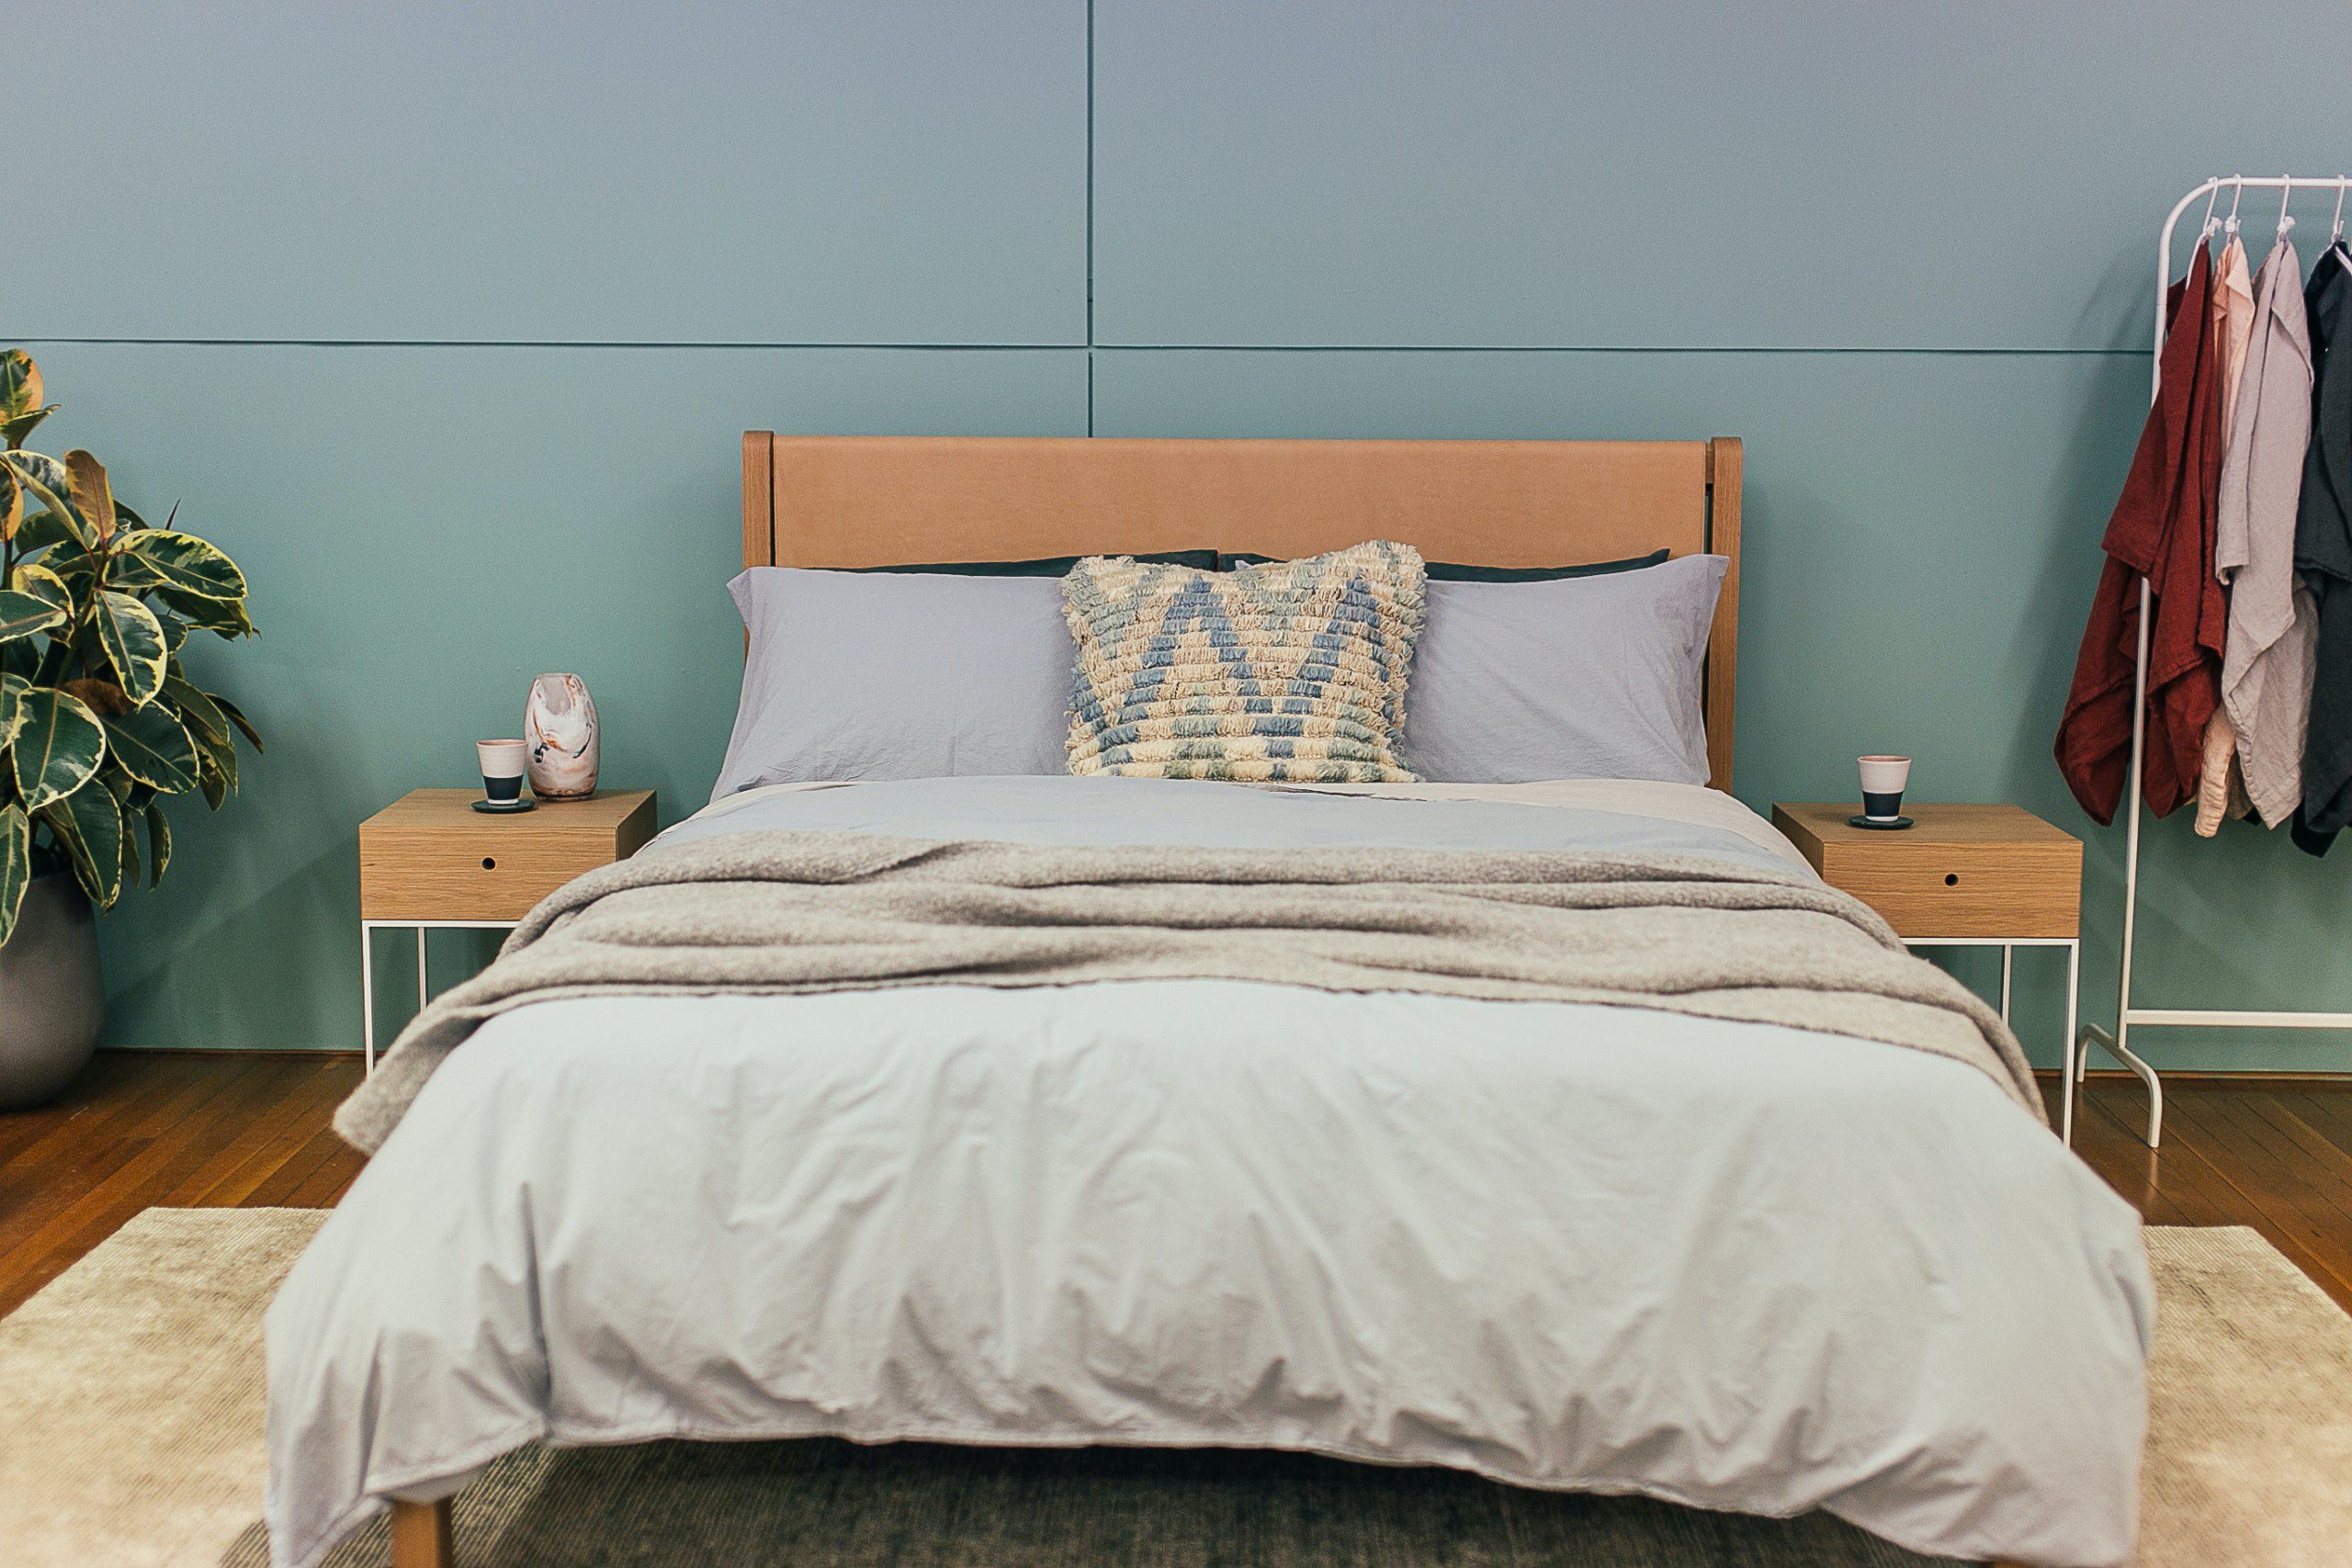 Imagem de um quarto de casal com cama e cabeceira de madeira. As mesinhas de cabeceira também são de madeira. O quarto possui uma parede no fundo no tom verde escuro e uma planta no canto esquerdo da foto.